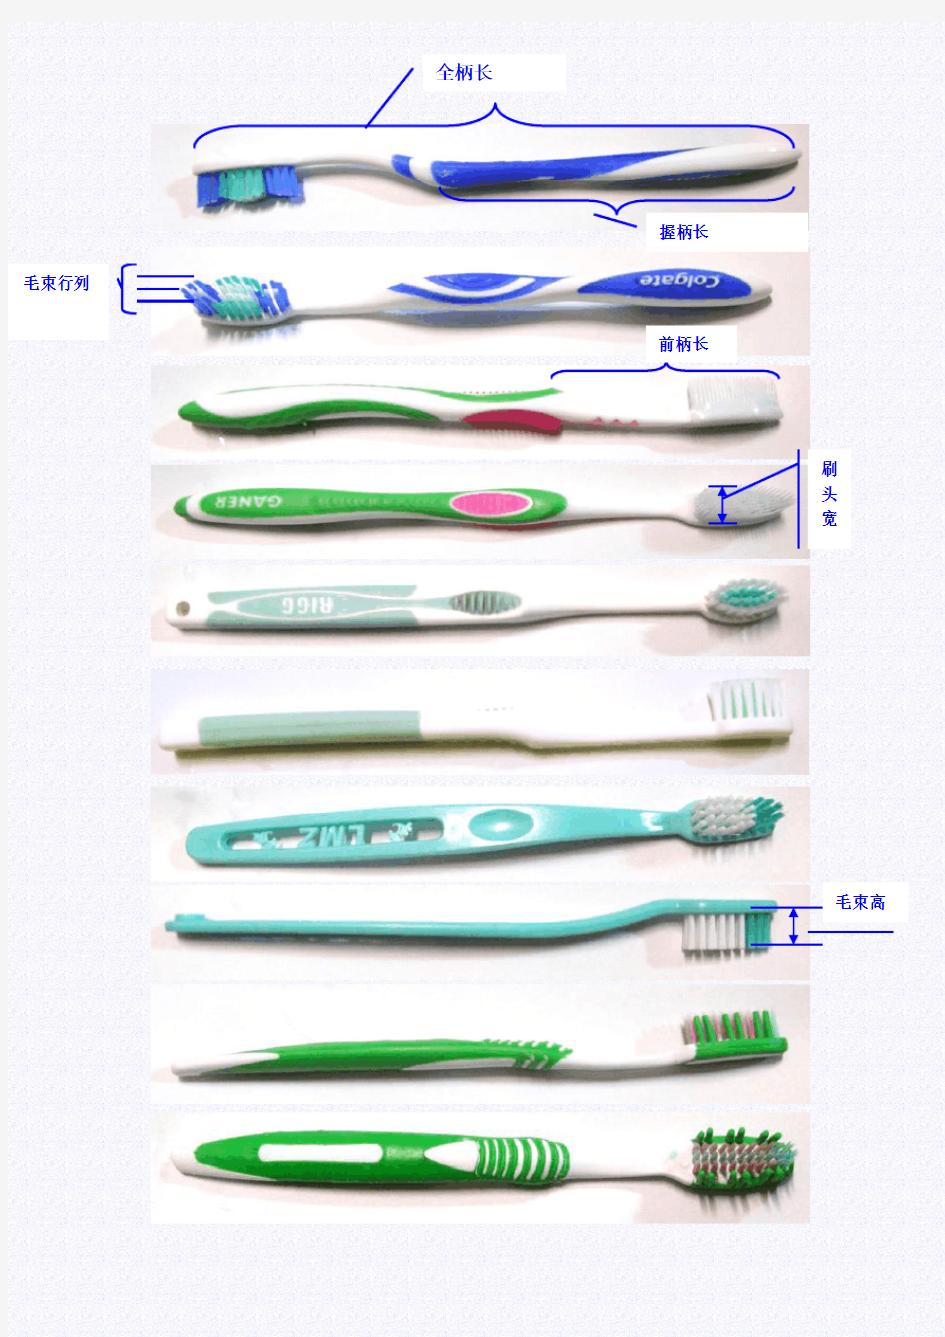 牙刷的各个尺寸参数与人机应用